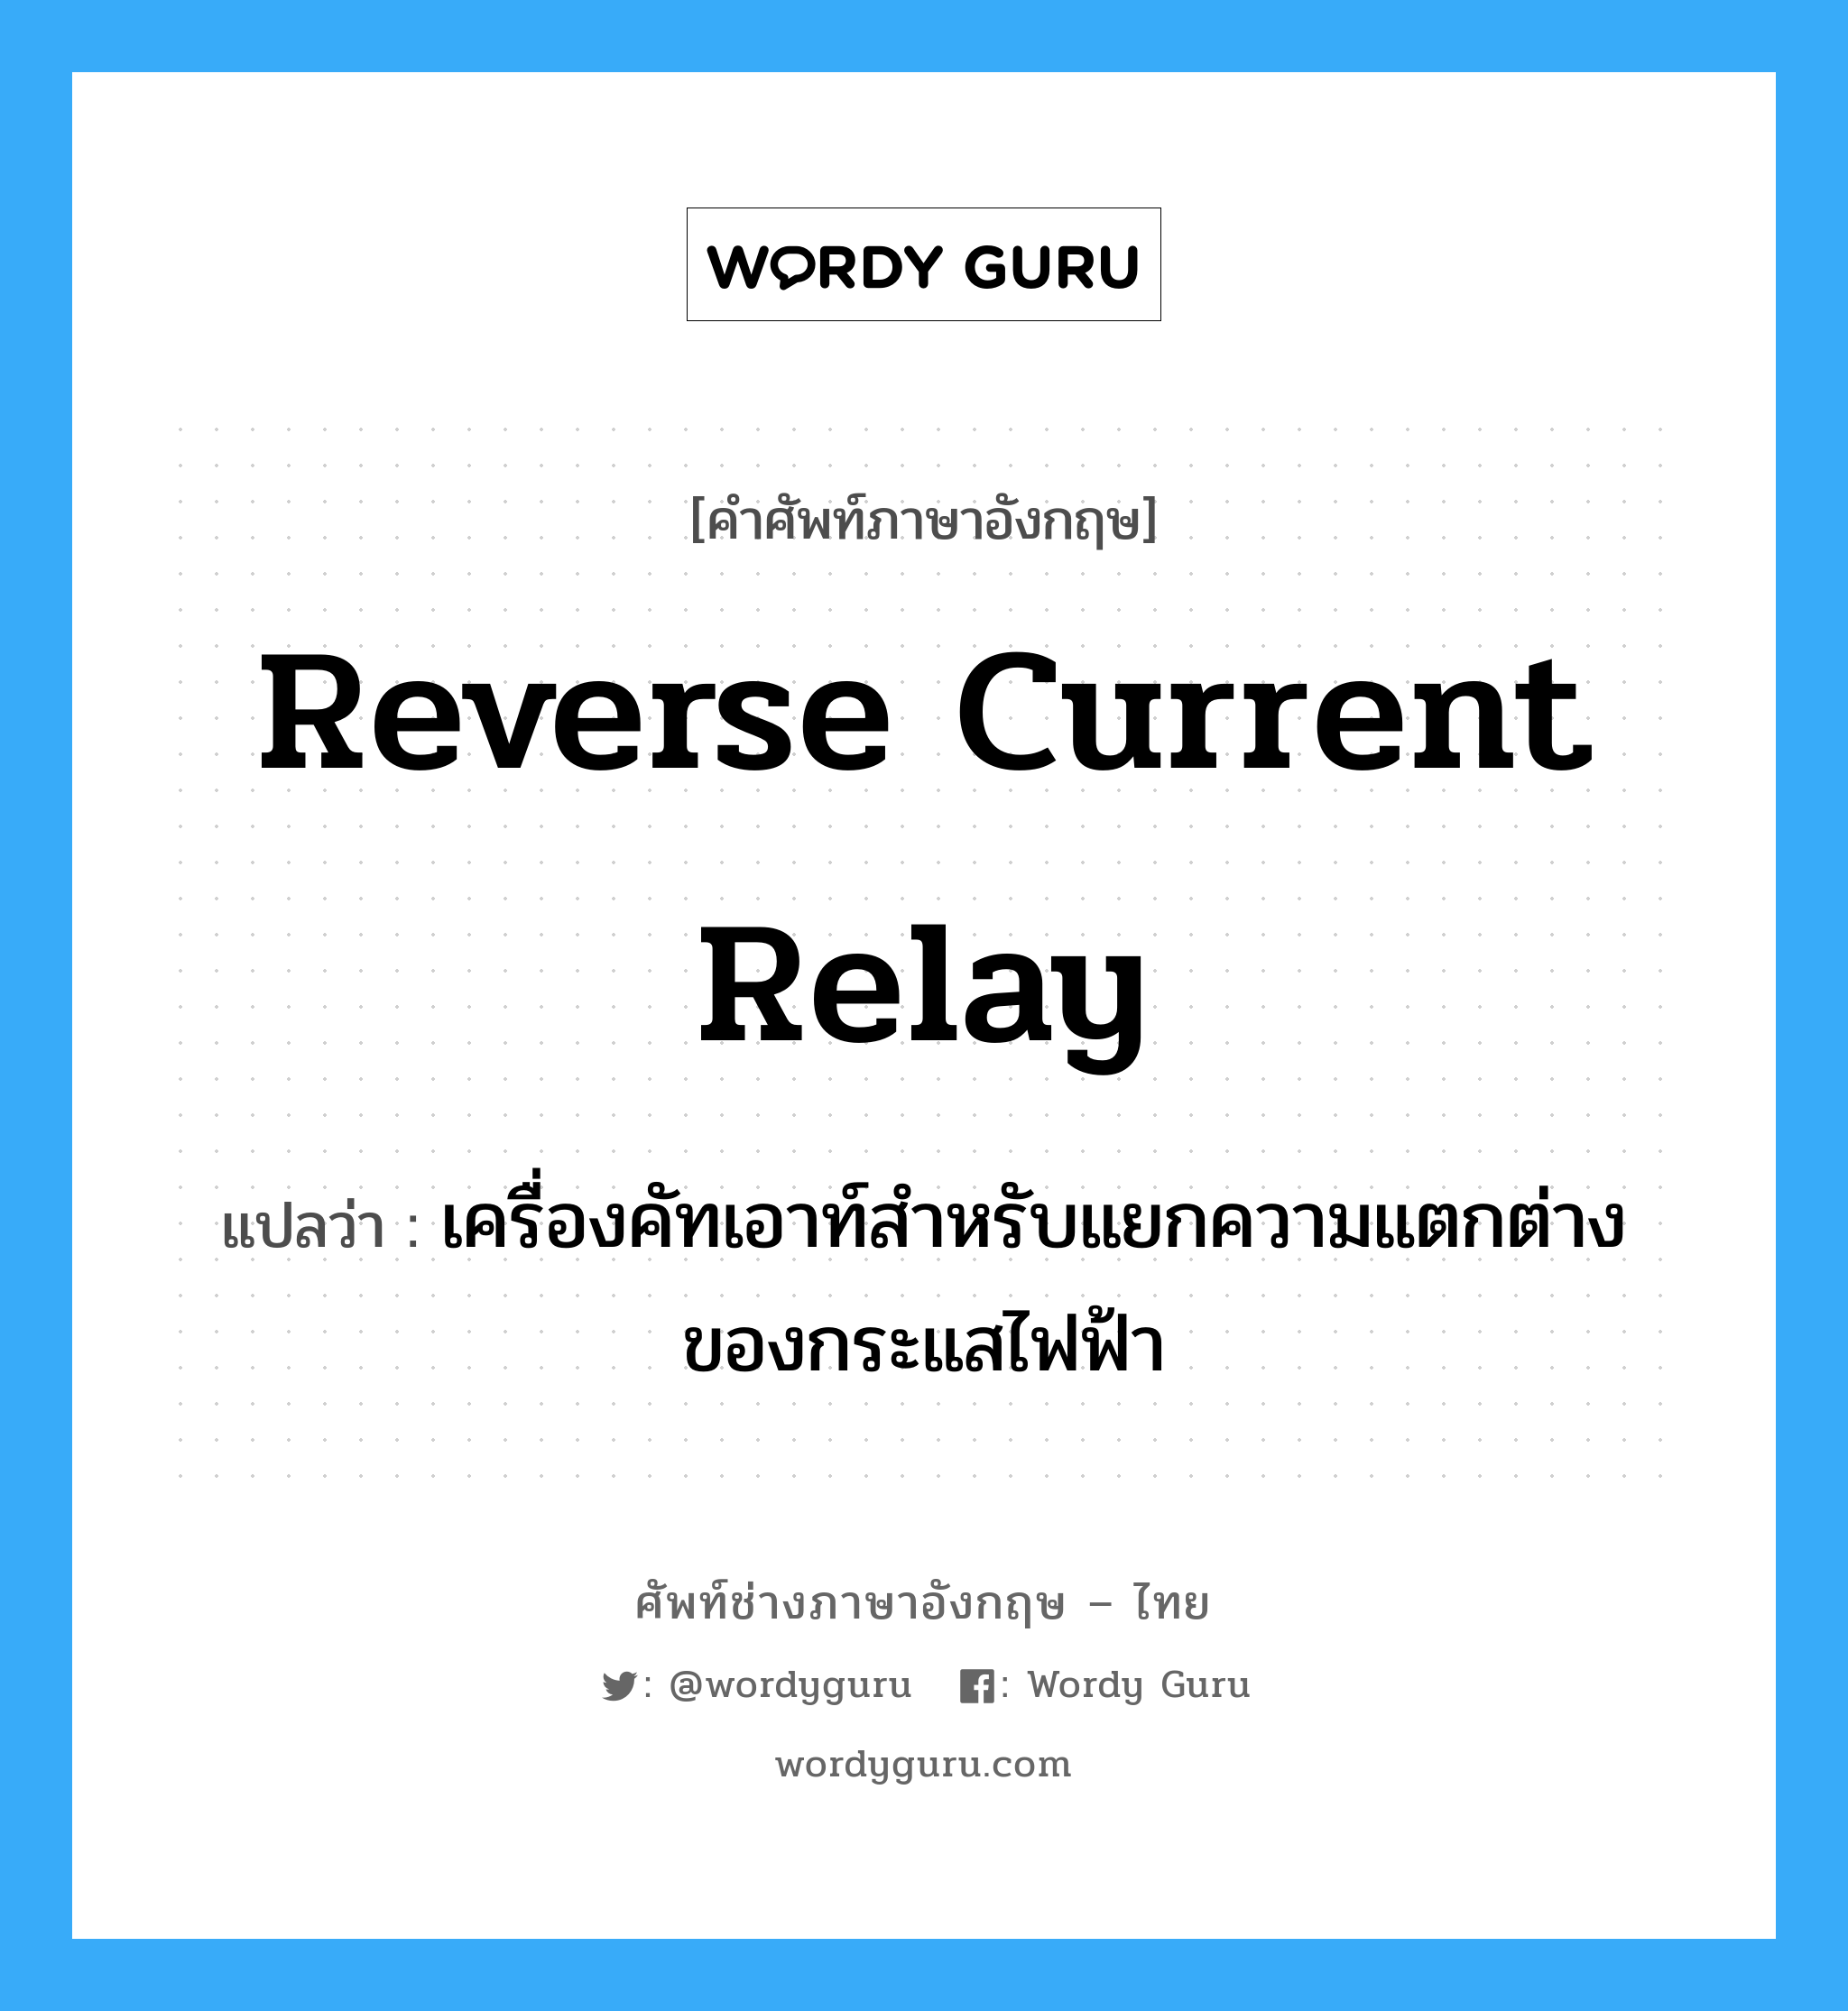 reverse current relay แปลว่า?, คำศัพท์ช่างภาษาอังกฤษ - ไทย reverse current relay คำศัพท์ภาษาอังกฤษ reverse current relay แปลว่า เครื่องคัทเอาท์สำหรับแยกความแตกต่างของกระแสไฟฟ้า